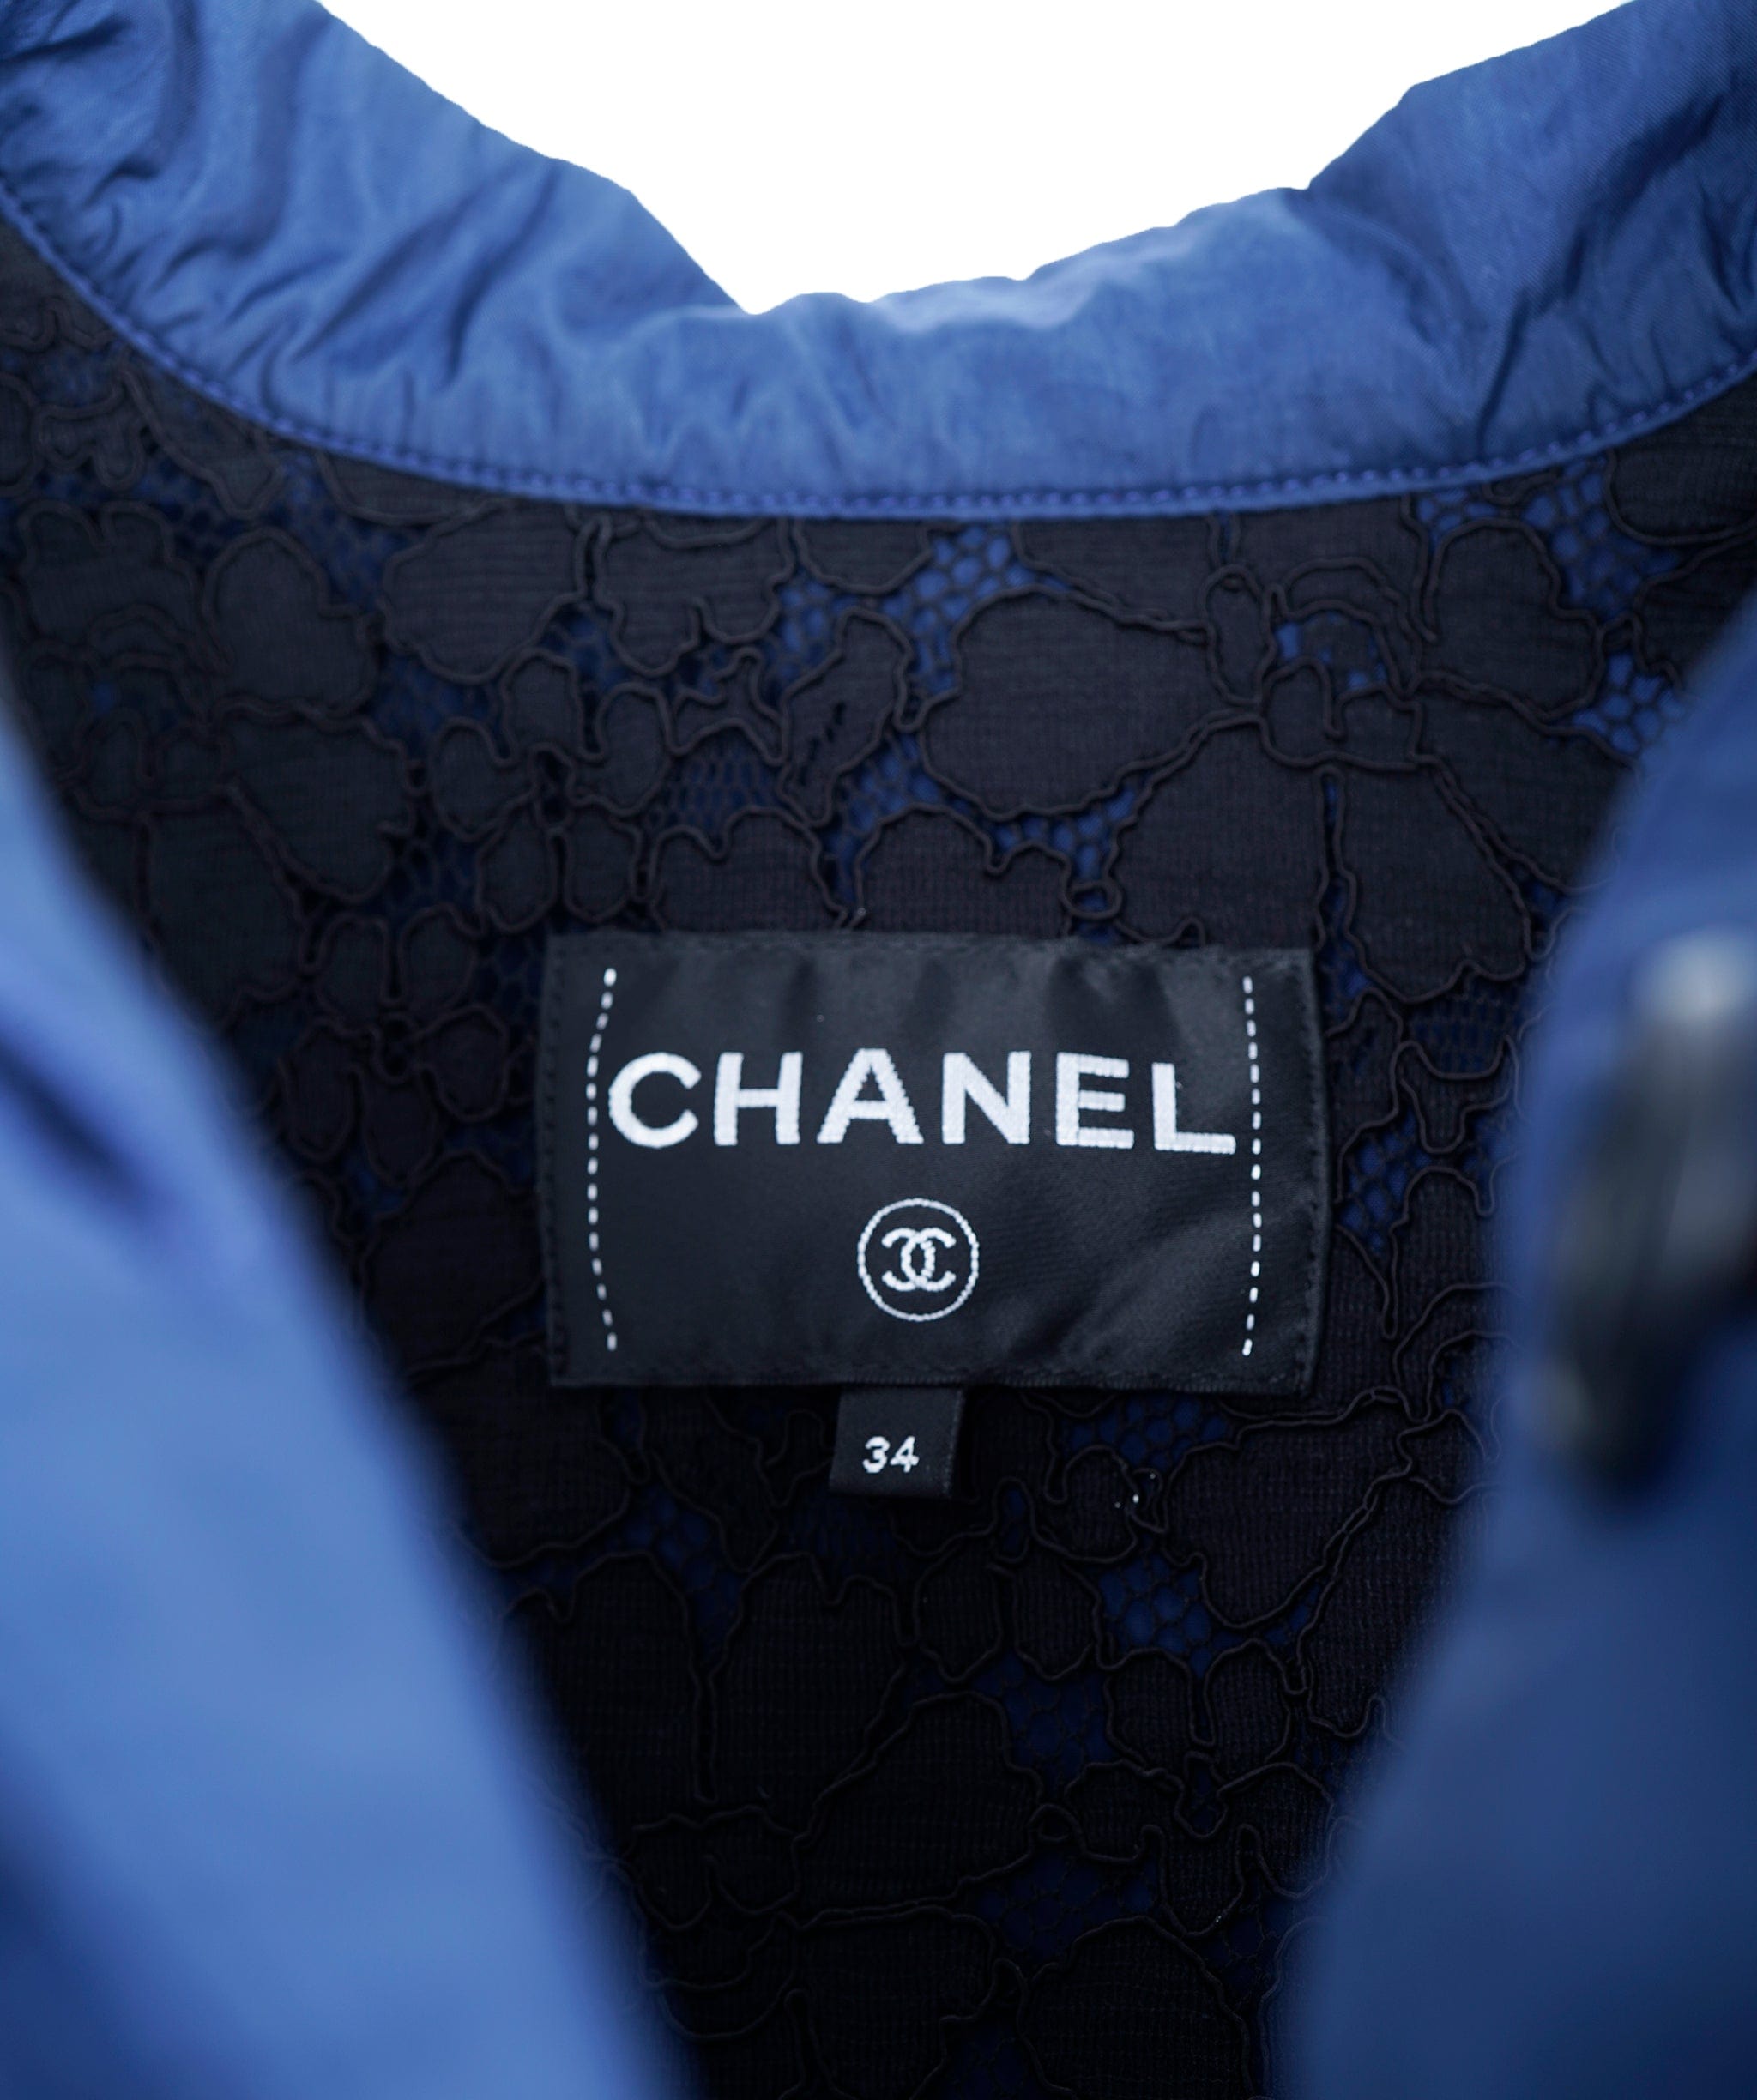 Chanel Chanel hooded wind breaker navy ASL9989